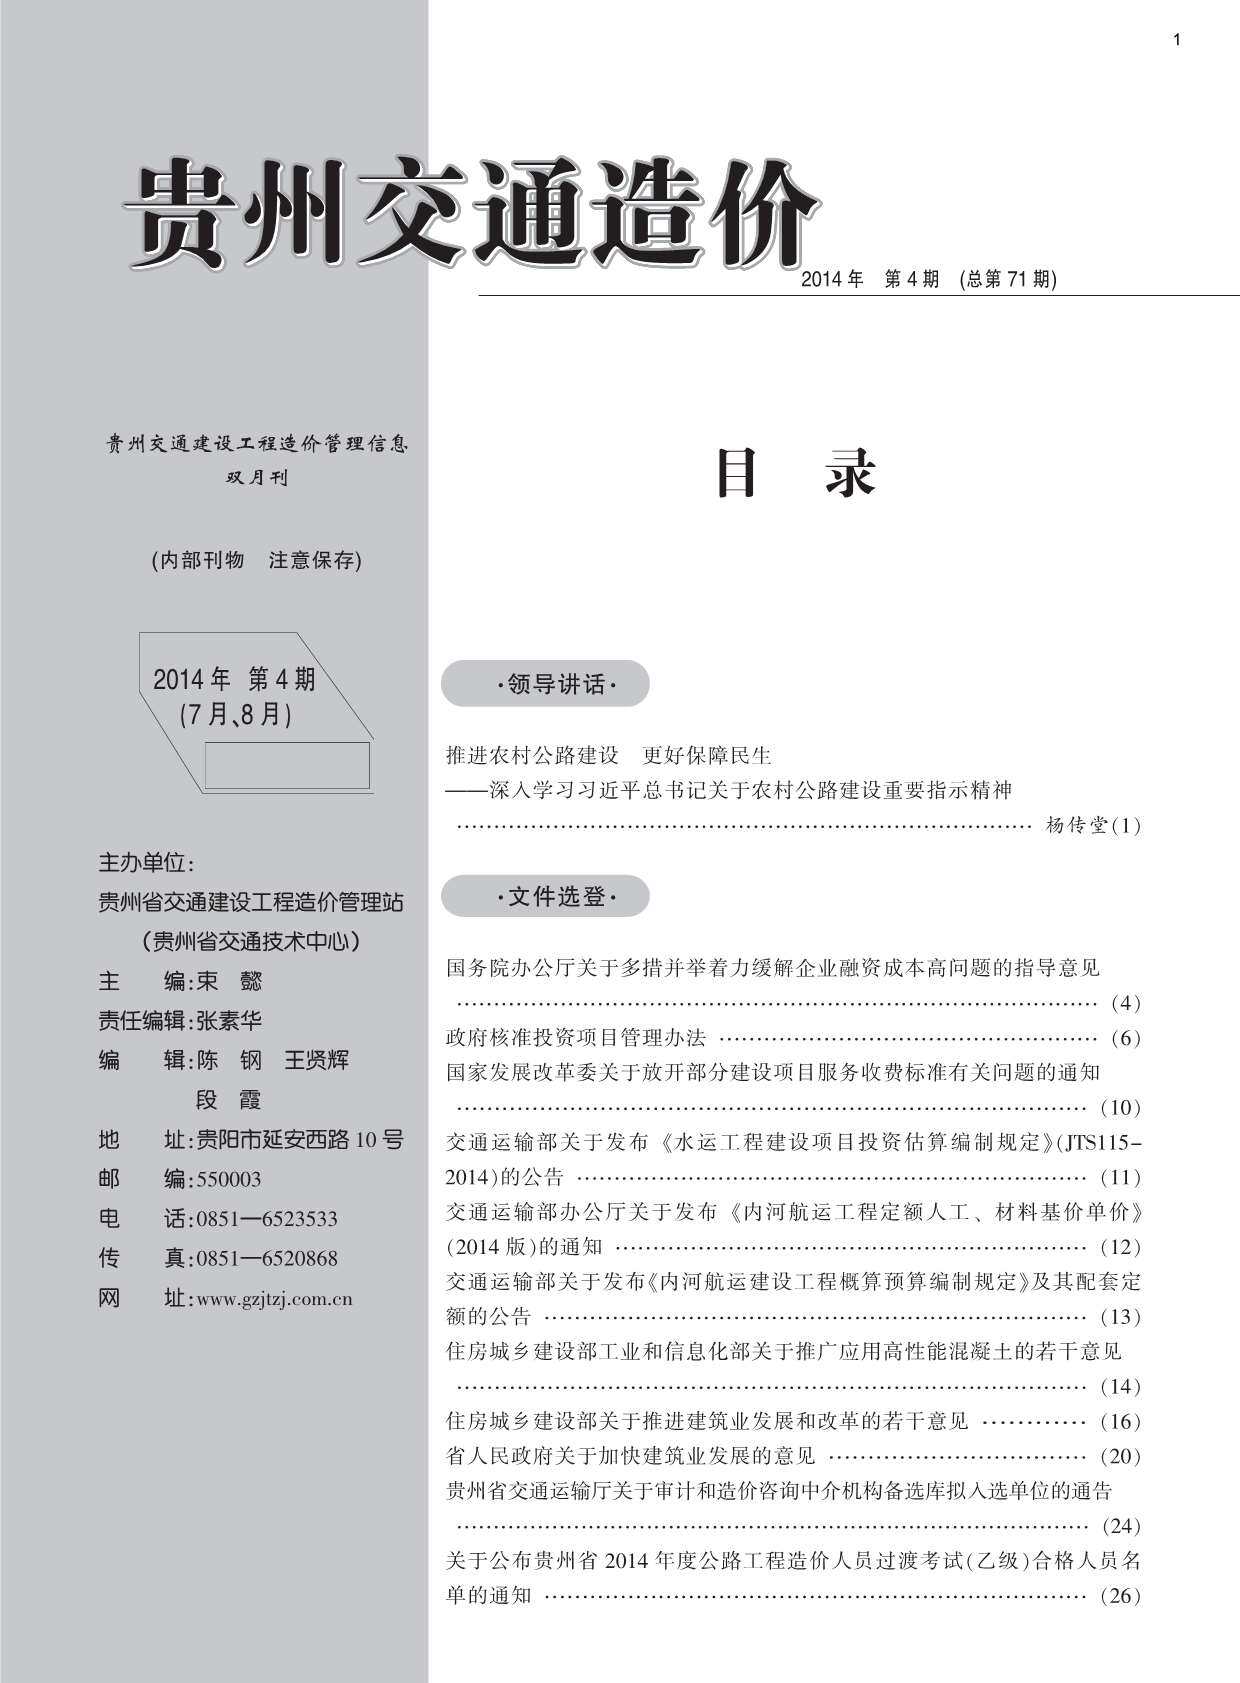 贵州省2014年4月交通工程造价信息期刊